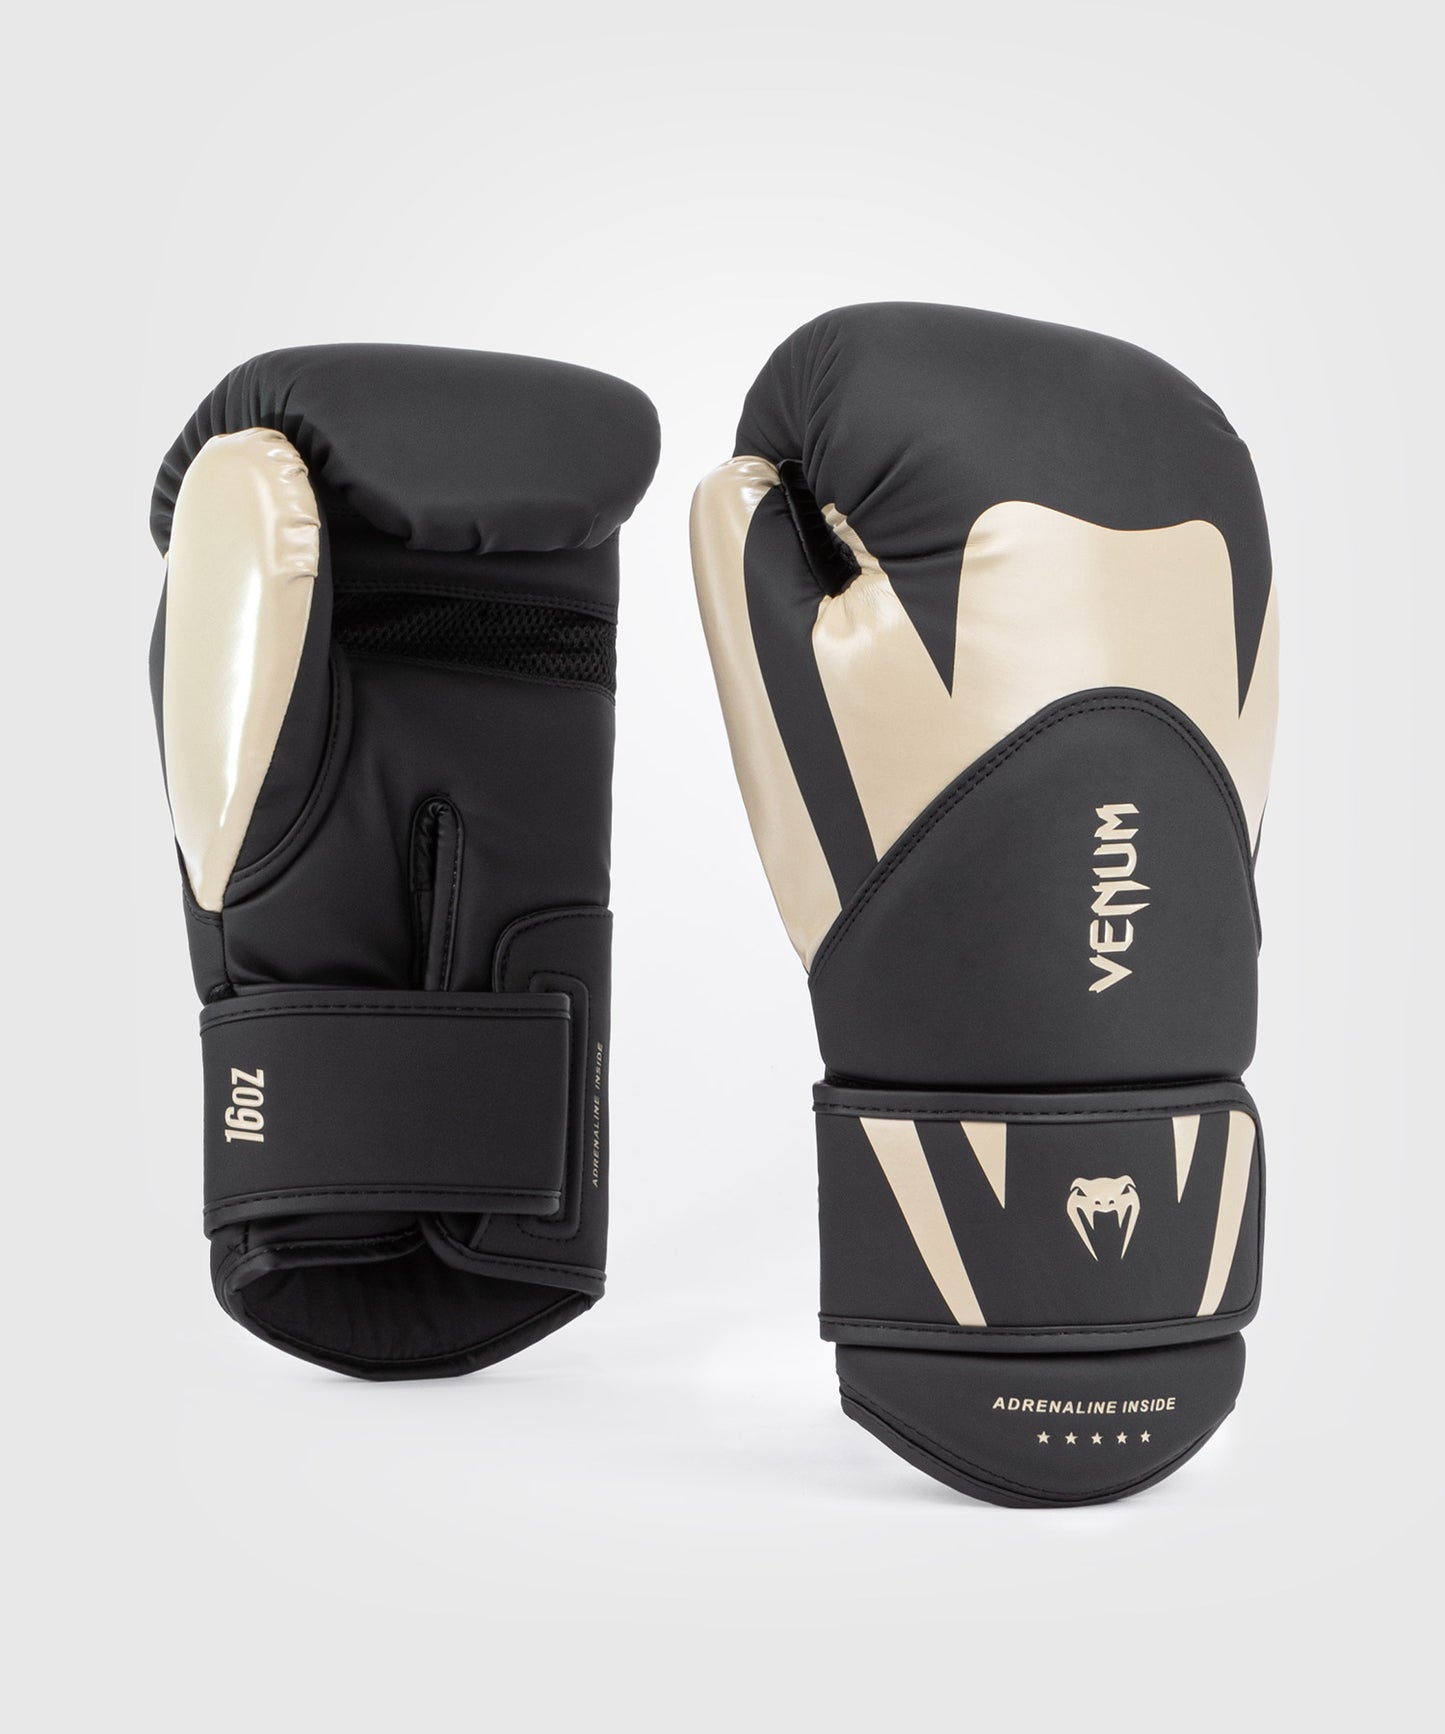 Боксерские перчатки Venum Challenger 4.0 - черный/бежевый